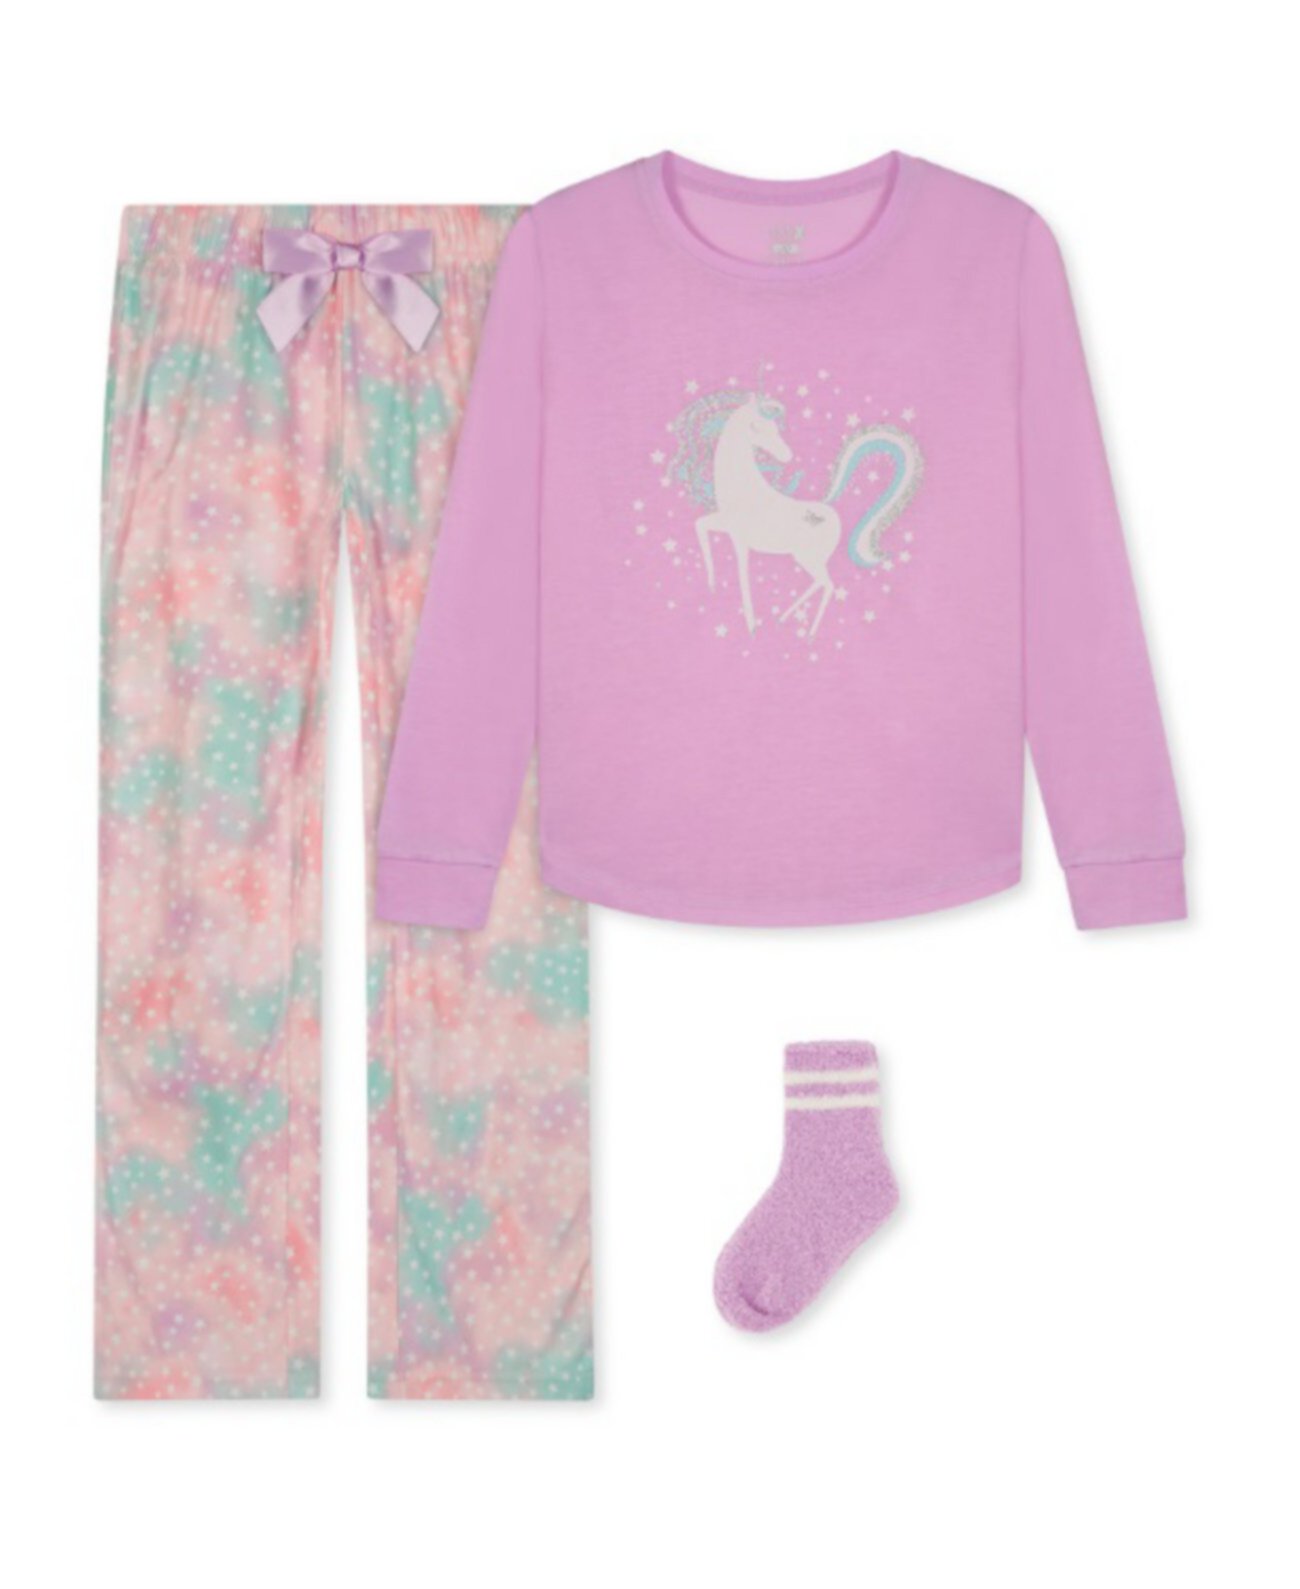 Топ с длинными рукавами, пижама и носки для маленьких девочек, комплект из 3 предметов Max & Olivia